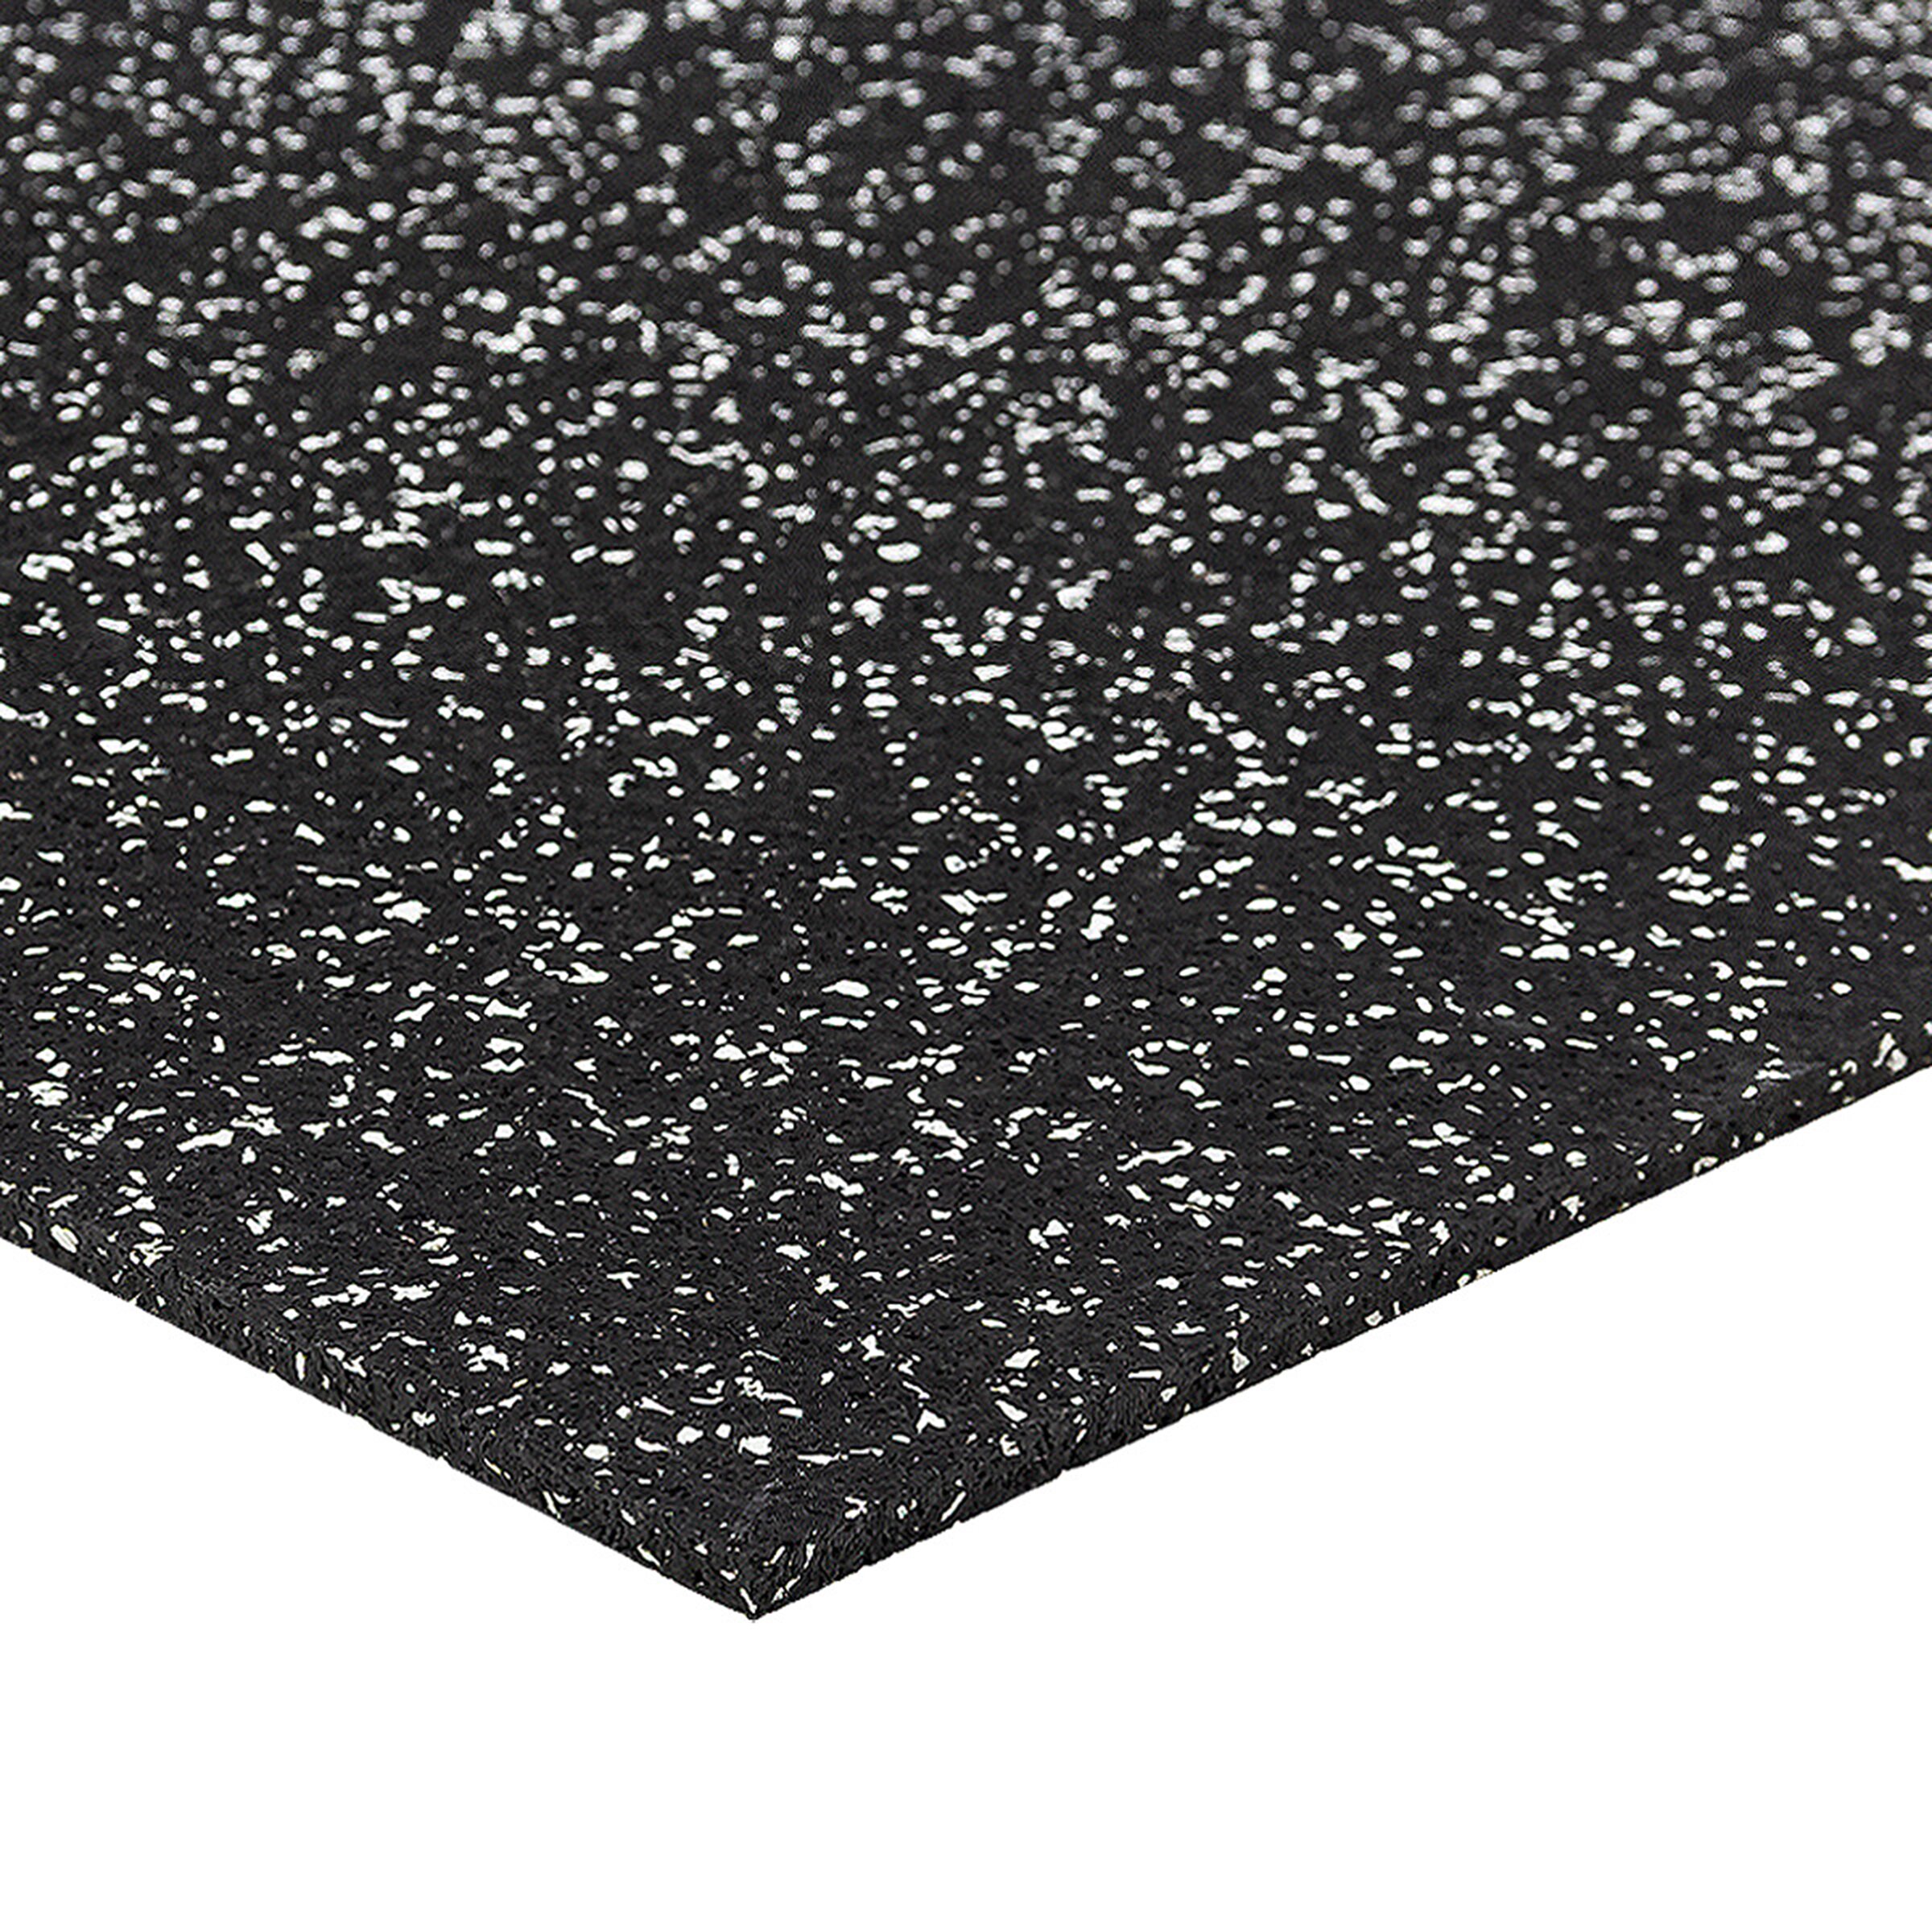 Černo-bílá podlahová guma FLOMA FitFlo SF1050 - délka 50 cm, šířka 50 cm, výška 0,8 cm